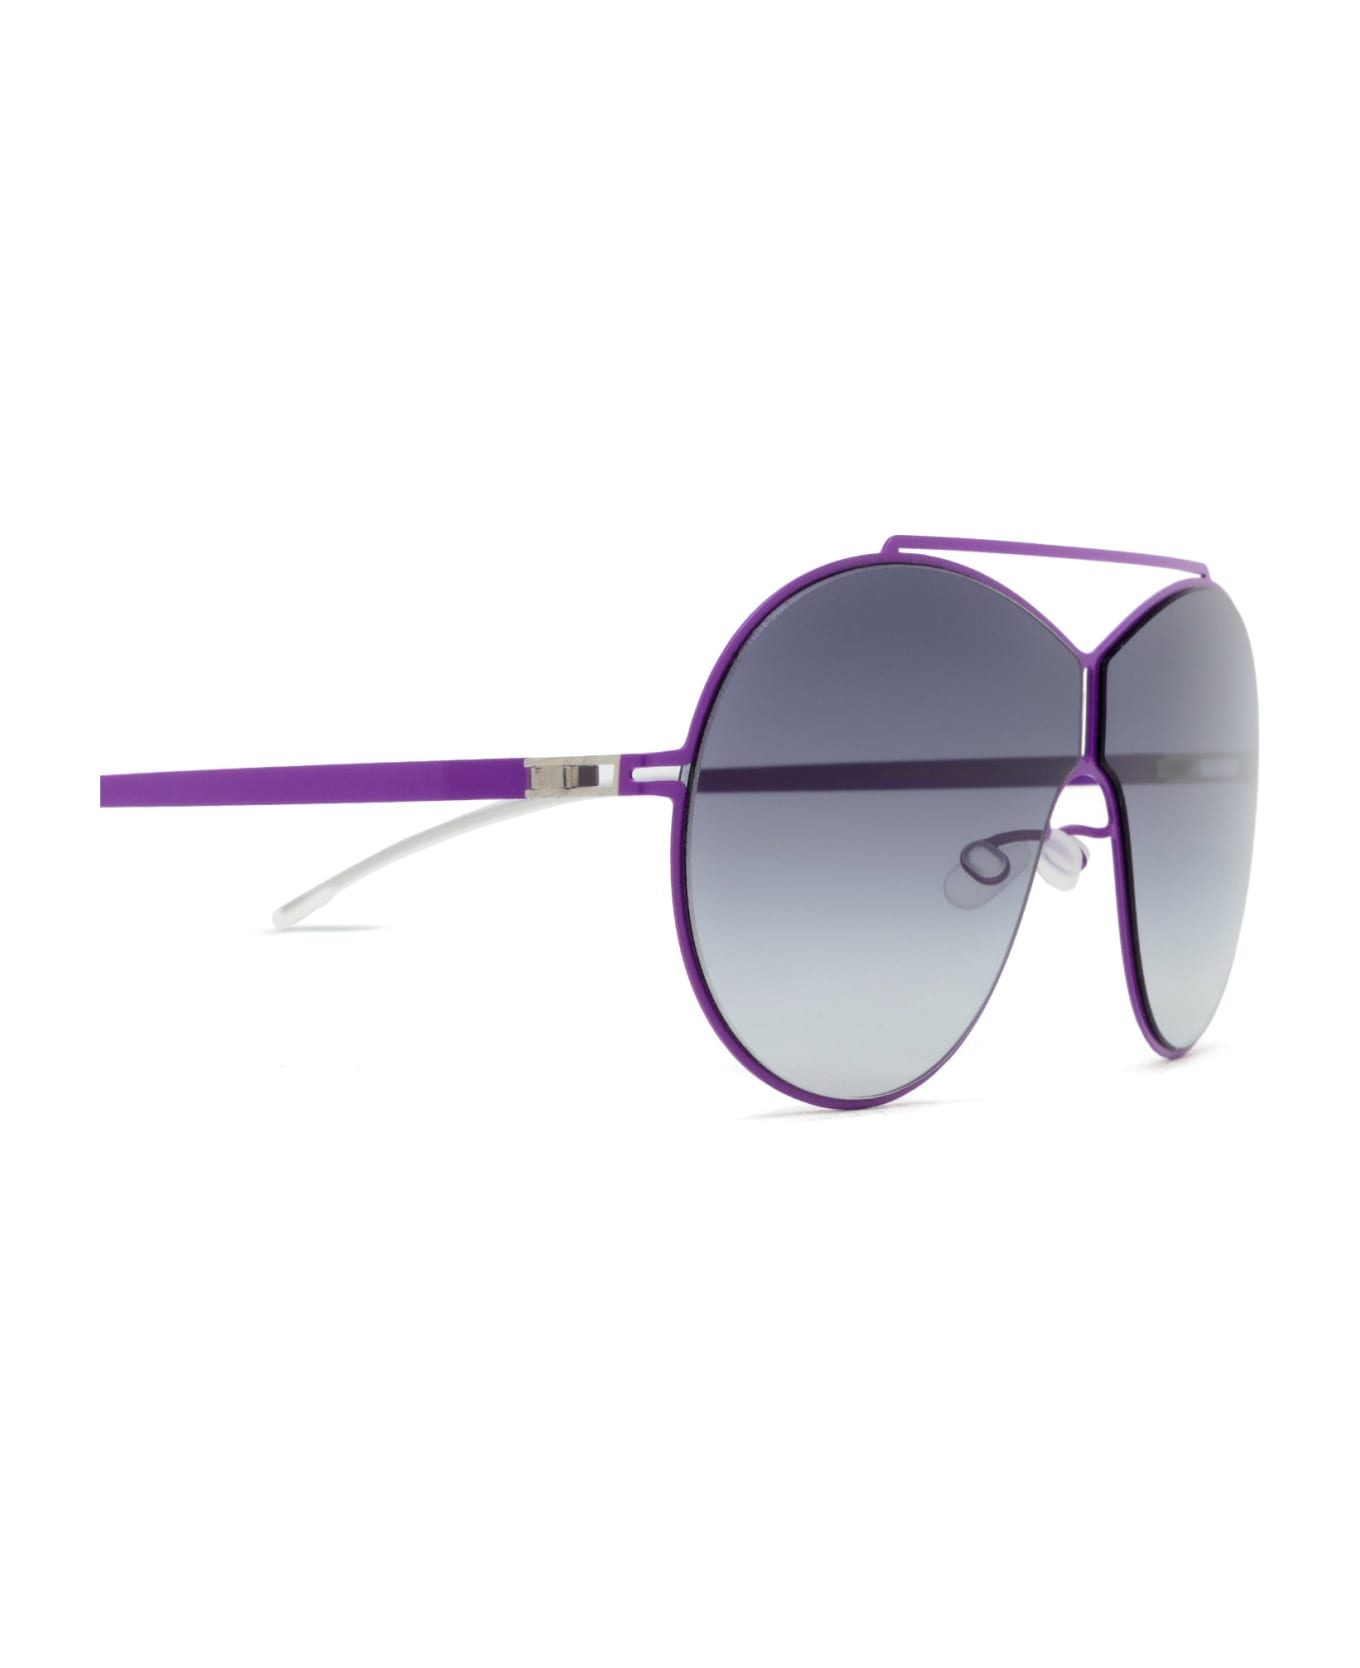 Mykita Studio12.5 Sun Bright Clover Sunglasses - Bright Clover